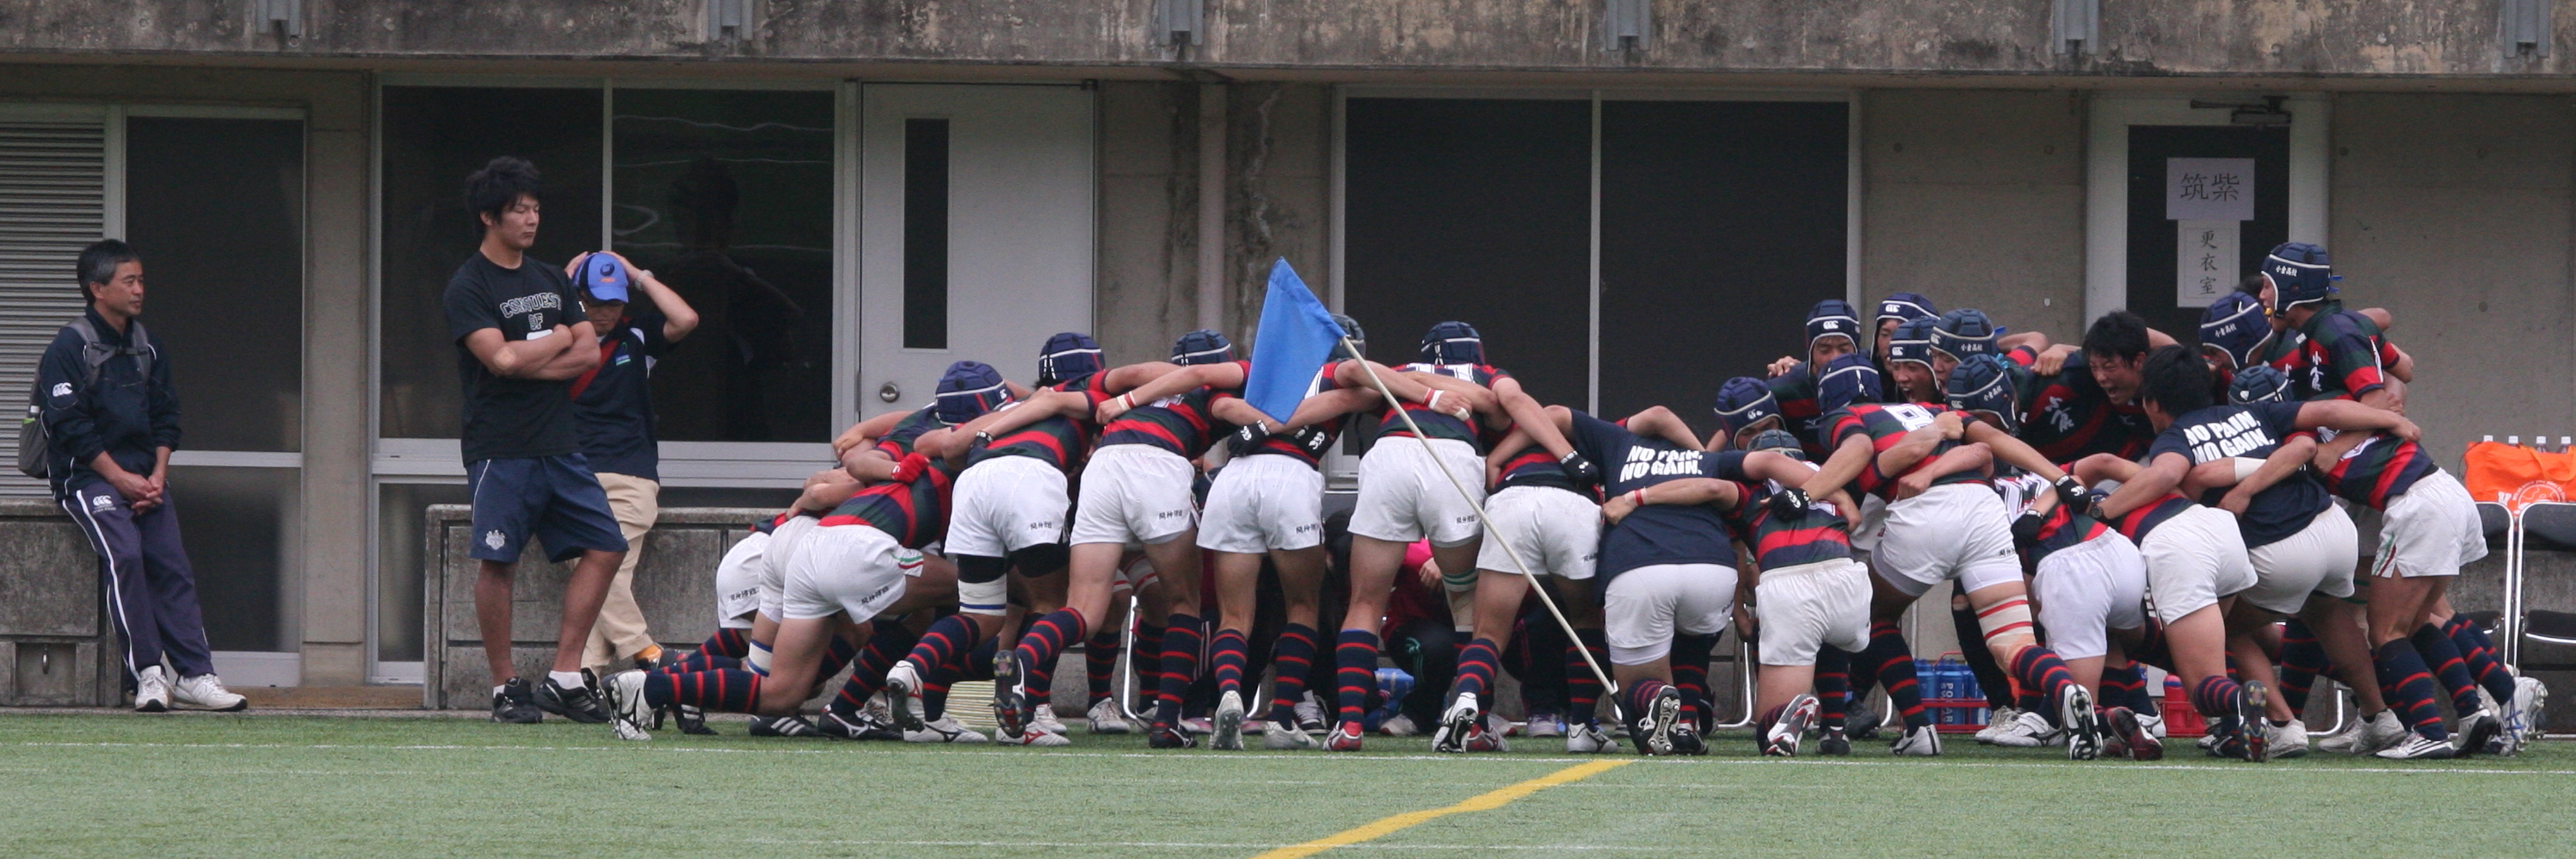 http://kokura-rugby.sakura.ne.jp/2011.6.5-3-A.JPG